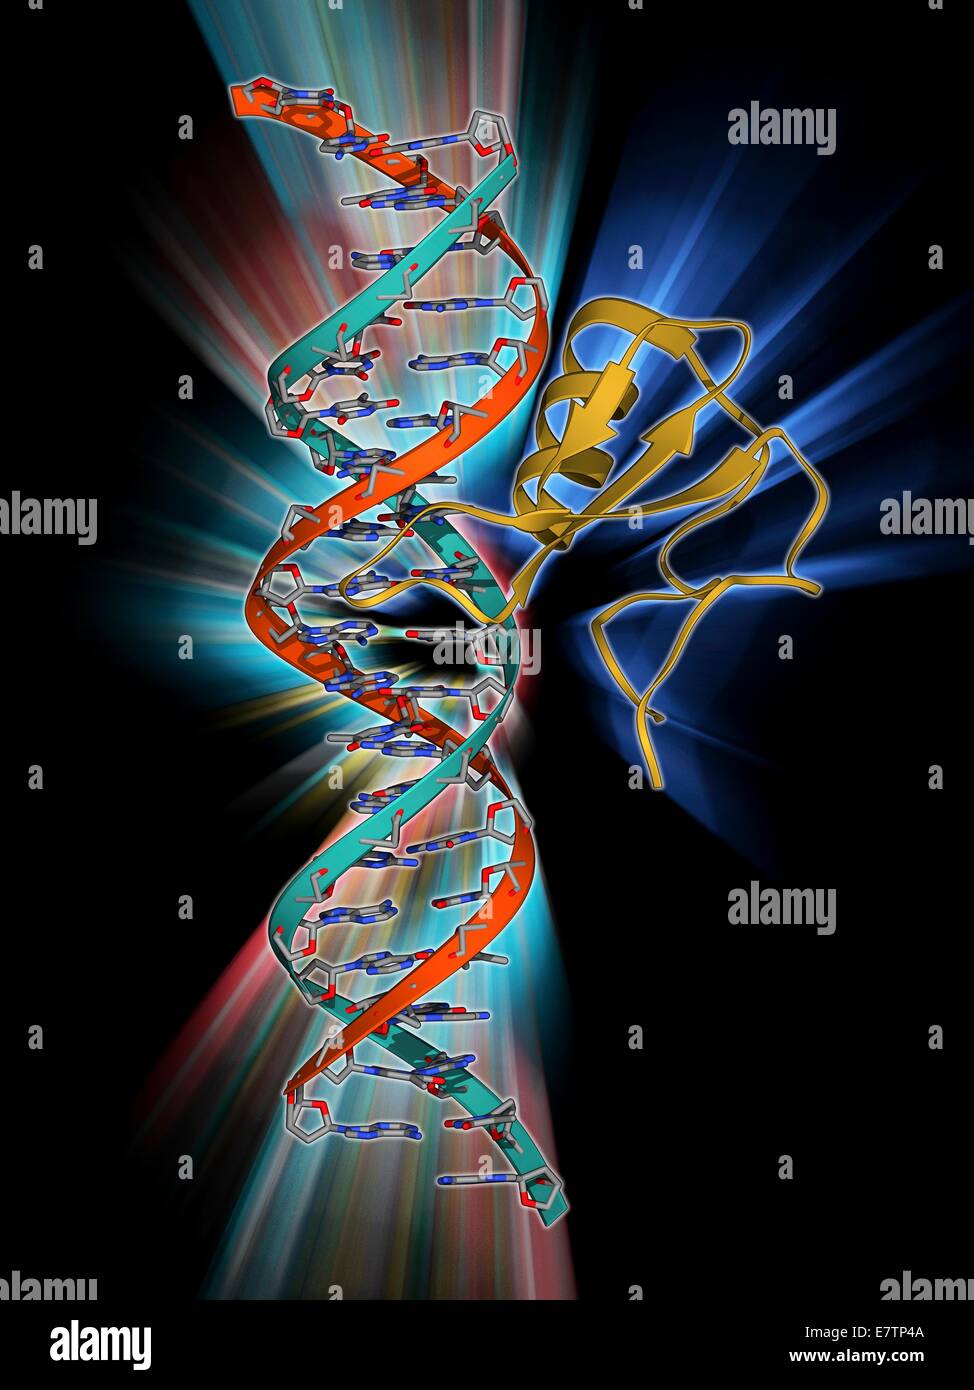 DNA und MECP2 Komplex. Molekulares Modell des MECP2 (Methyl CpG verbindliches Protein 2 (Rett-Syndrom)) an BDNF (Brain-derived Neurotrophic Factor) gen in einem Strang von methylierte DNA (Desoxyribonukleinsäure, rot und blau) gebunden. MECP2 ist ein Protein, das Essen ist Stockfoto